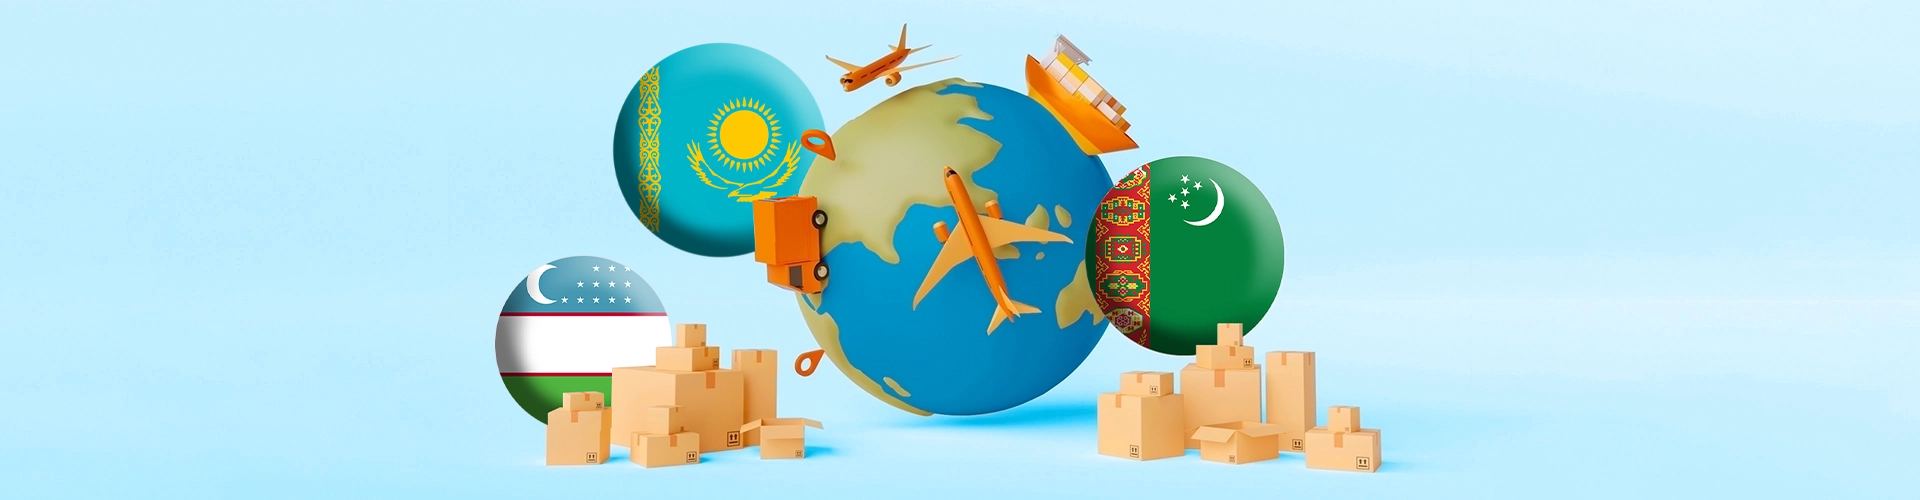 حمل بار به ازبکستان، تاجیکستان و قزاقستان